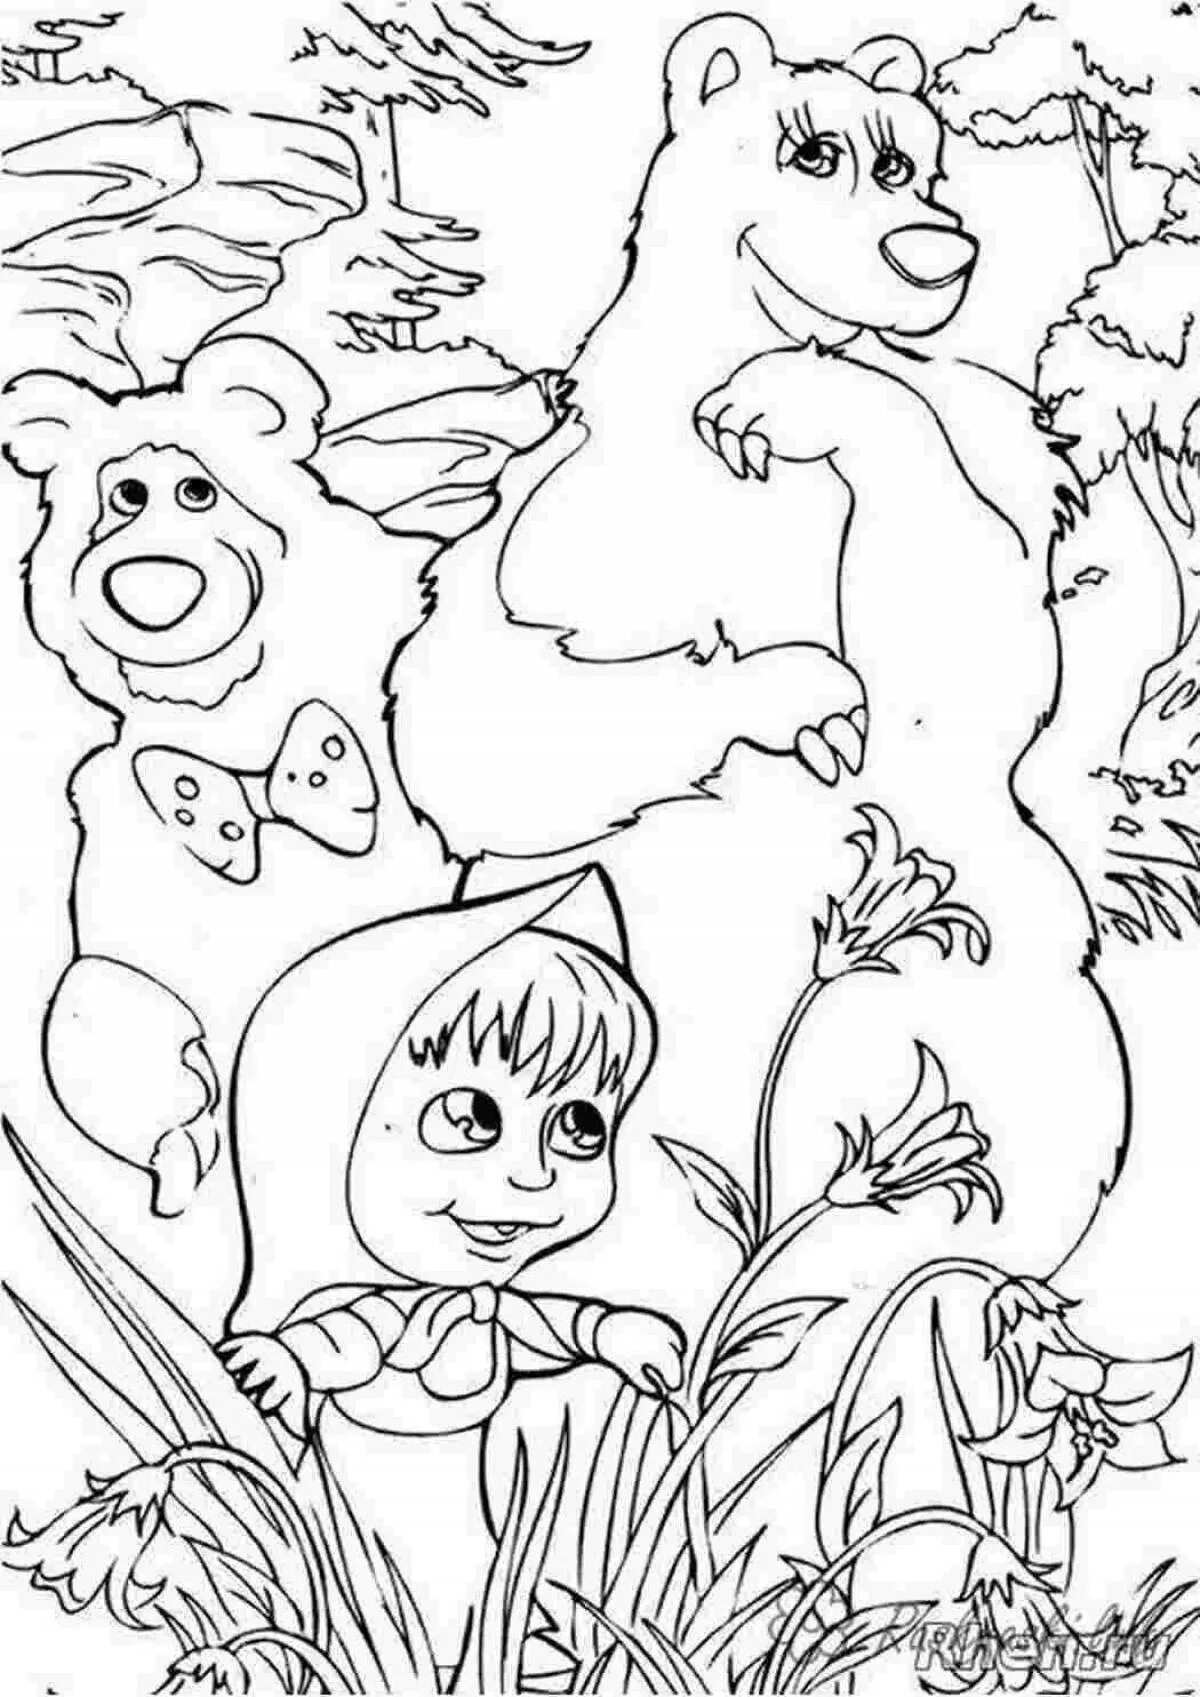 Розмальовки Маша и медведь. Разукрашку Маша и медведь. Раскраски для детей Маша и медведь а4. Разукрашки Маша и медведь Формат а4.